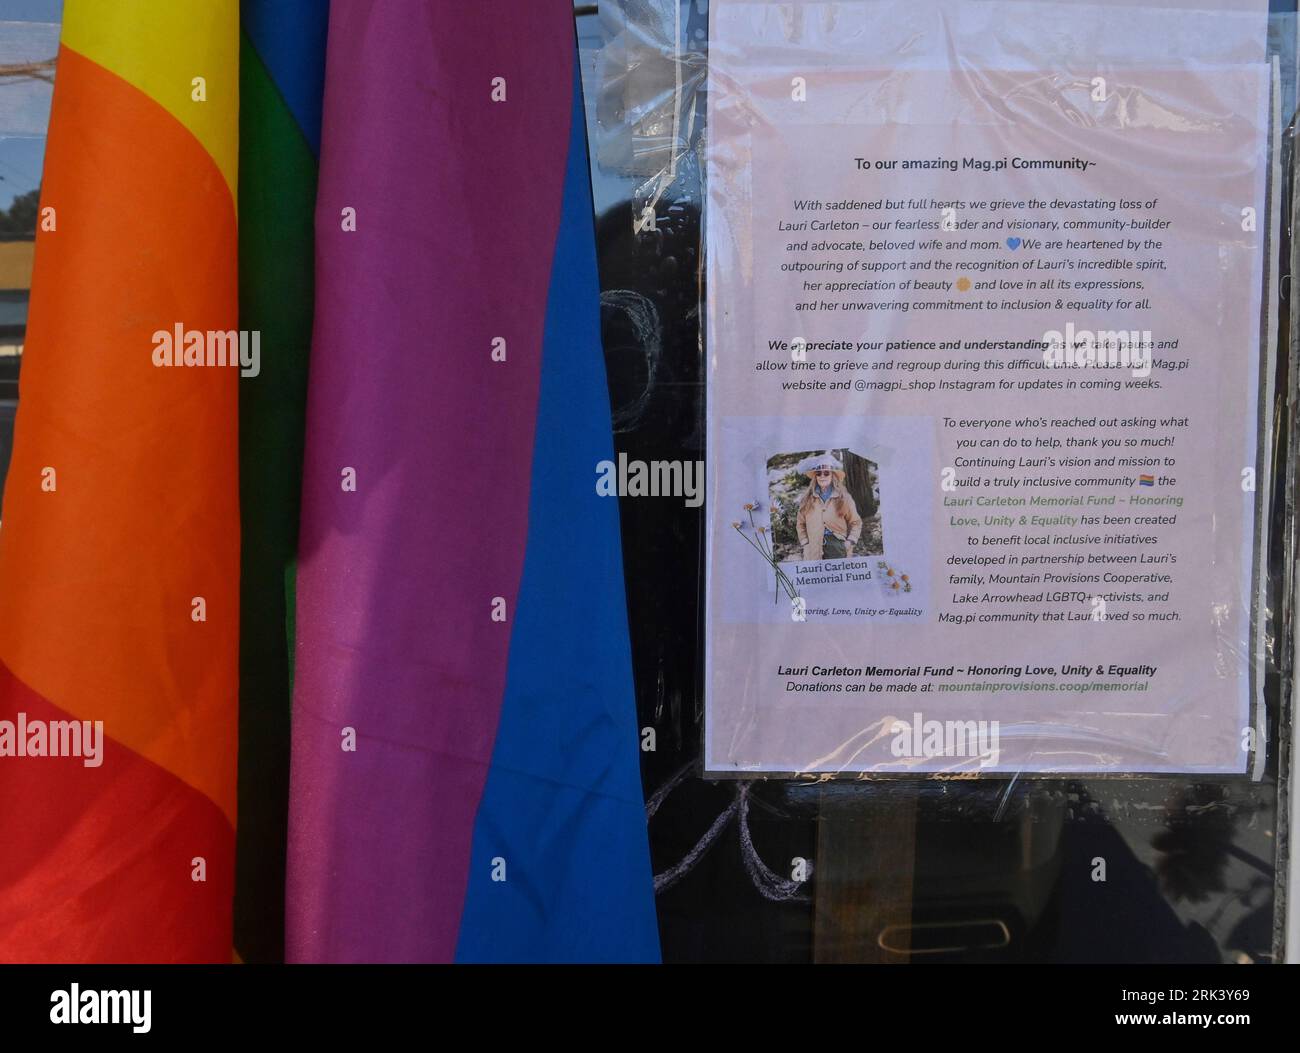 Un memoriale improvvisato per Laura Ann Carleton è stato visto fuori dal suo negozio a Studio City, California, mercoledì 23 agosto 2023. Carleton, una madre sposata di 9 bambini, è stata uccisa venerdì scorso da Travis Ikeguchi dopo aver fatto osservazioni omofobe in una accesa disputa su una bandiera arcobaleno che sventolava dal suo negozio Mag.Pi a Cedar Glen, California. Un rapporto ha rilevato più di 350 incidenti anti-LGBTQ in 46 stati e nel Distretto di Columbia, poiché la legislazione anti-LGBTQ è votata in tutto il paese. Foto di Jim Ruymen/UPI. Foto Stock